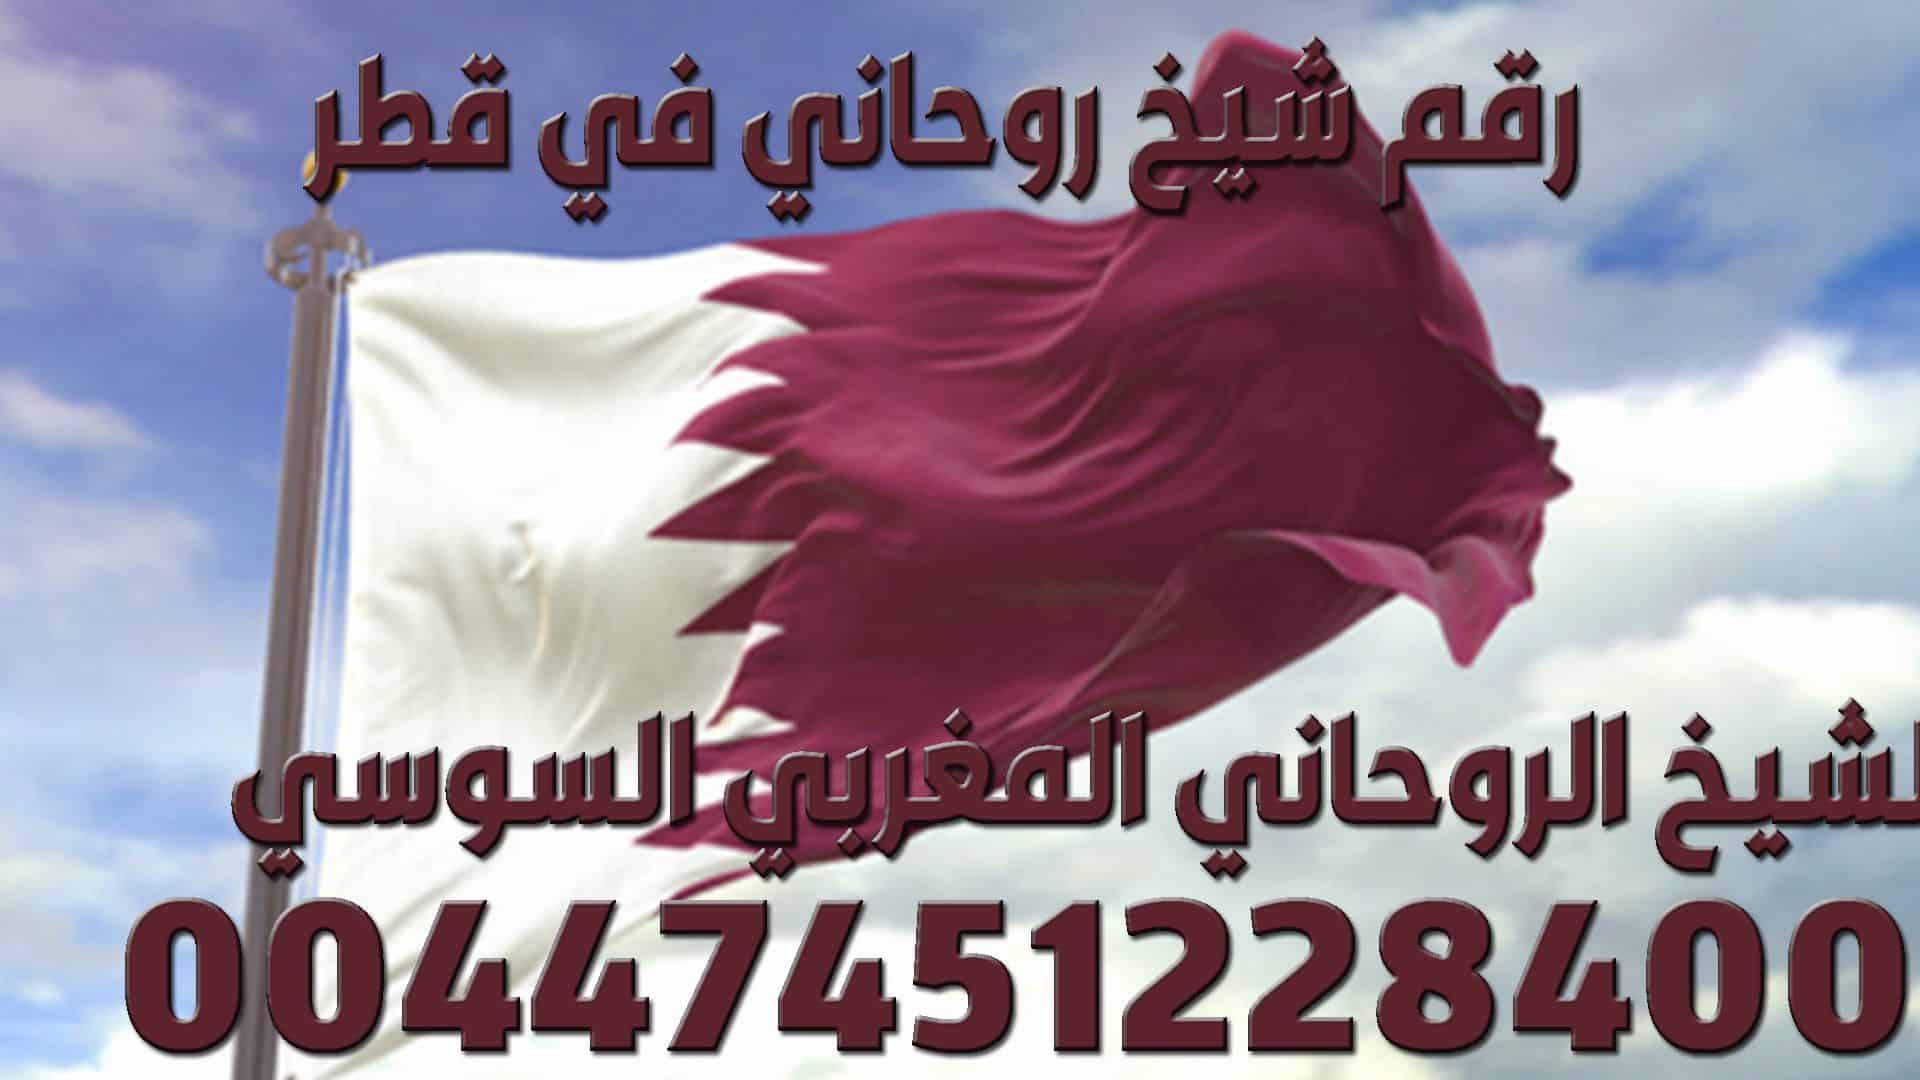 رقم شيخ روحاني في قطر